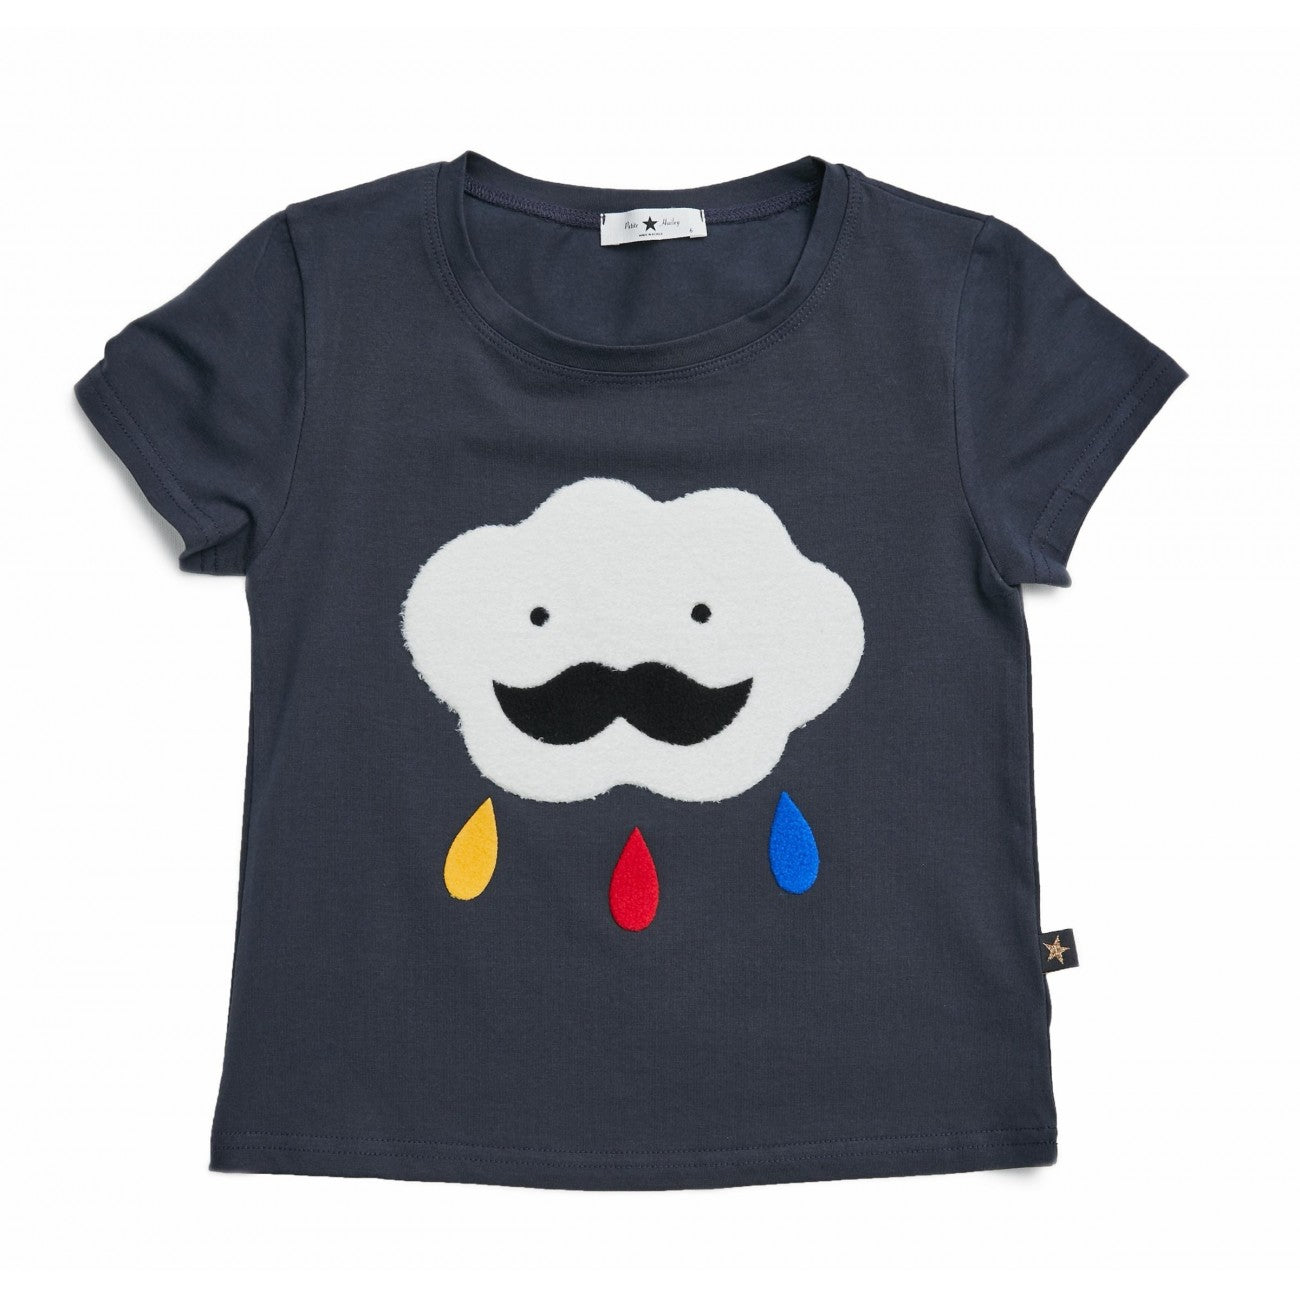 Unisex Cloud T-shirt